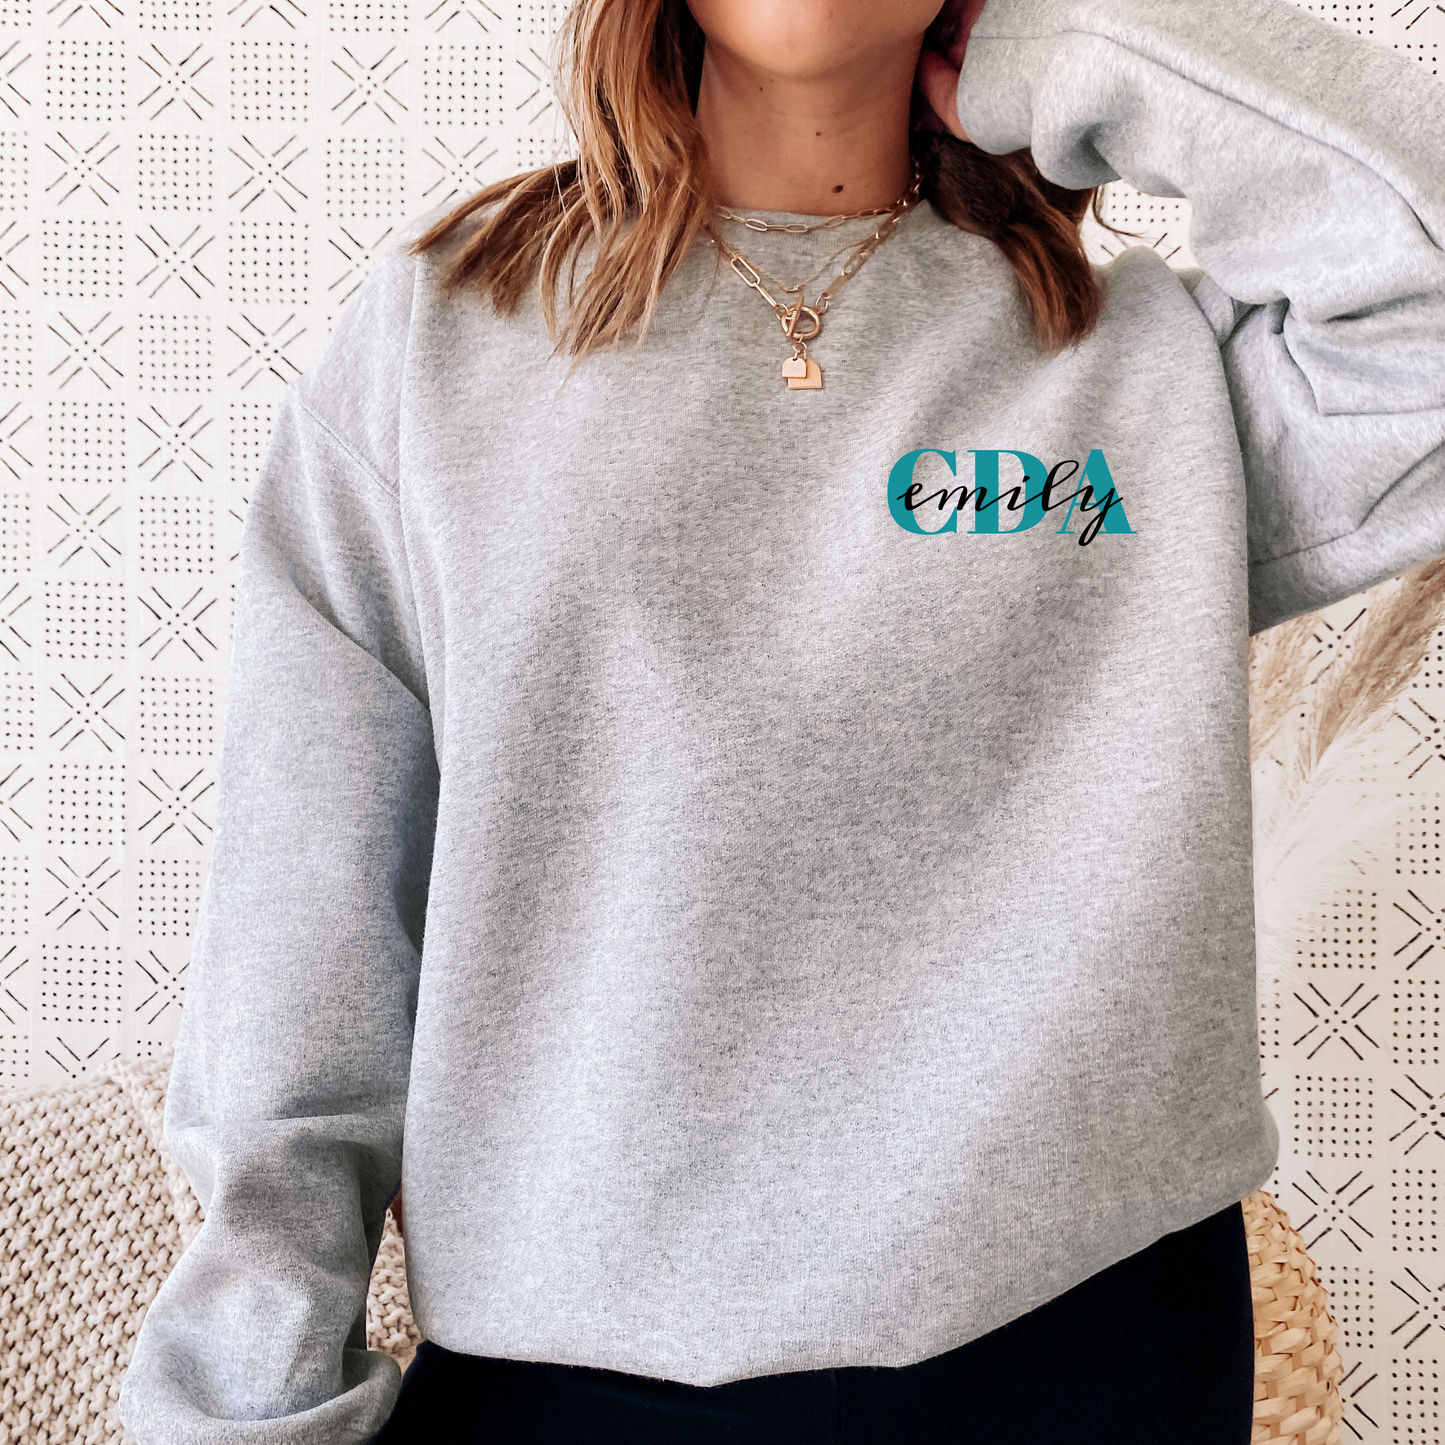 Personalized CDA Crewneck Sweatshirt